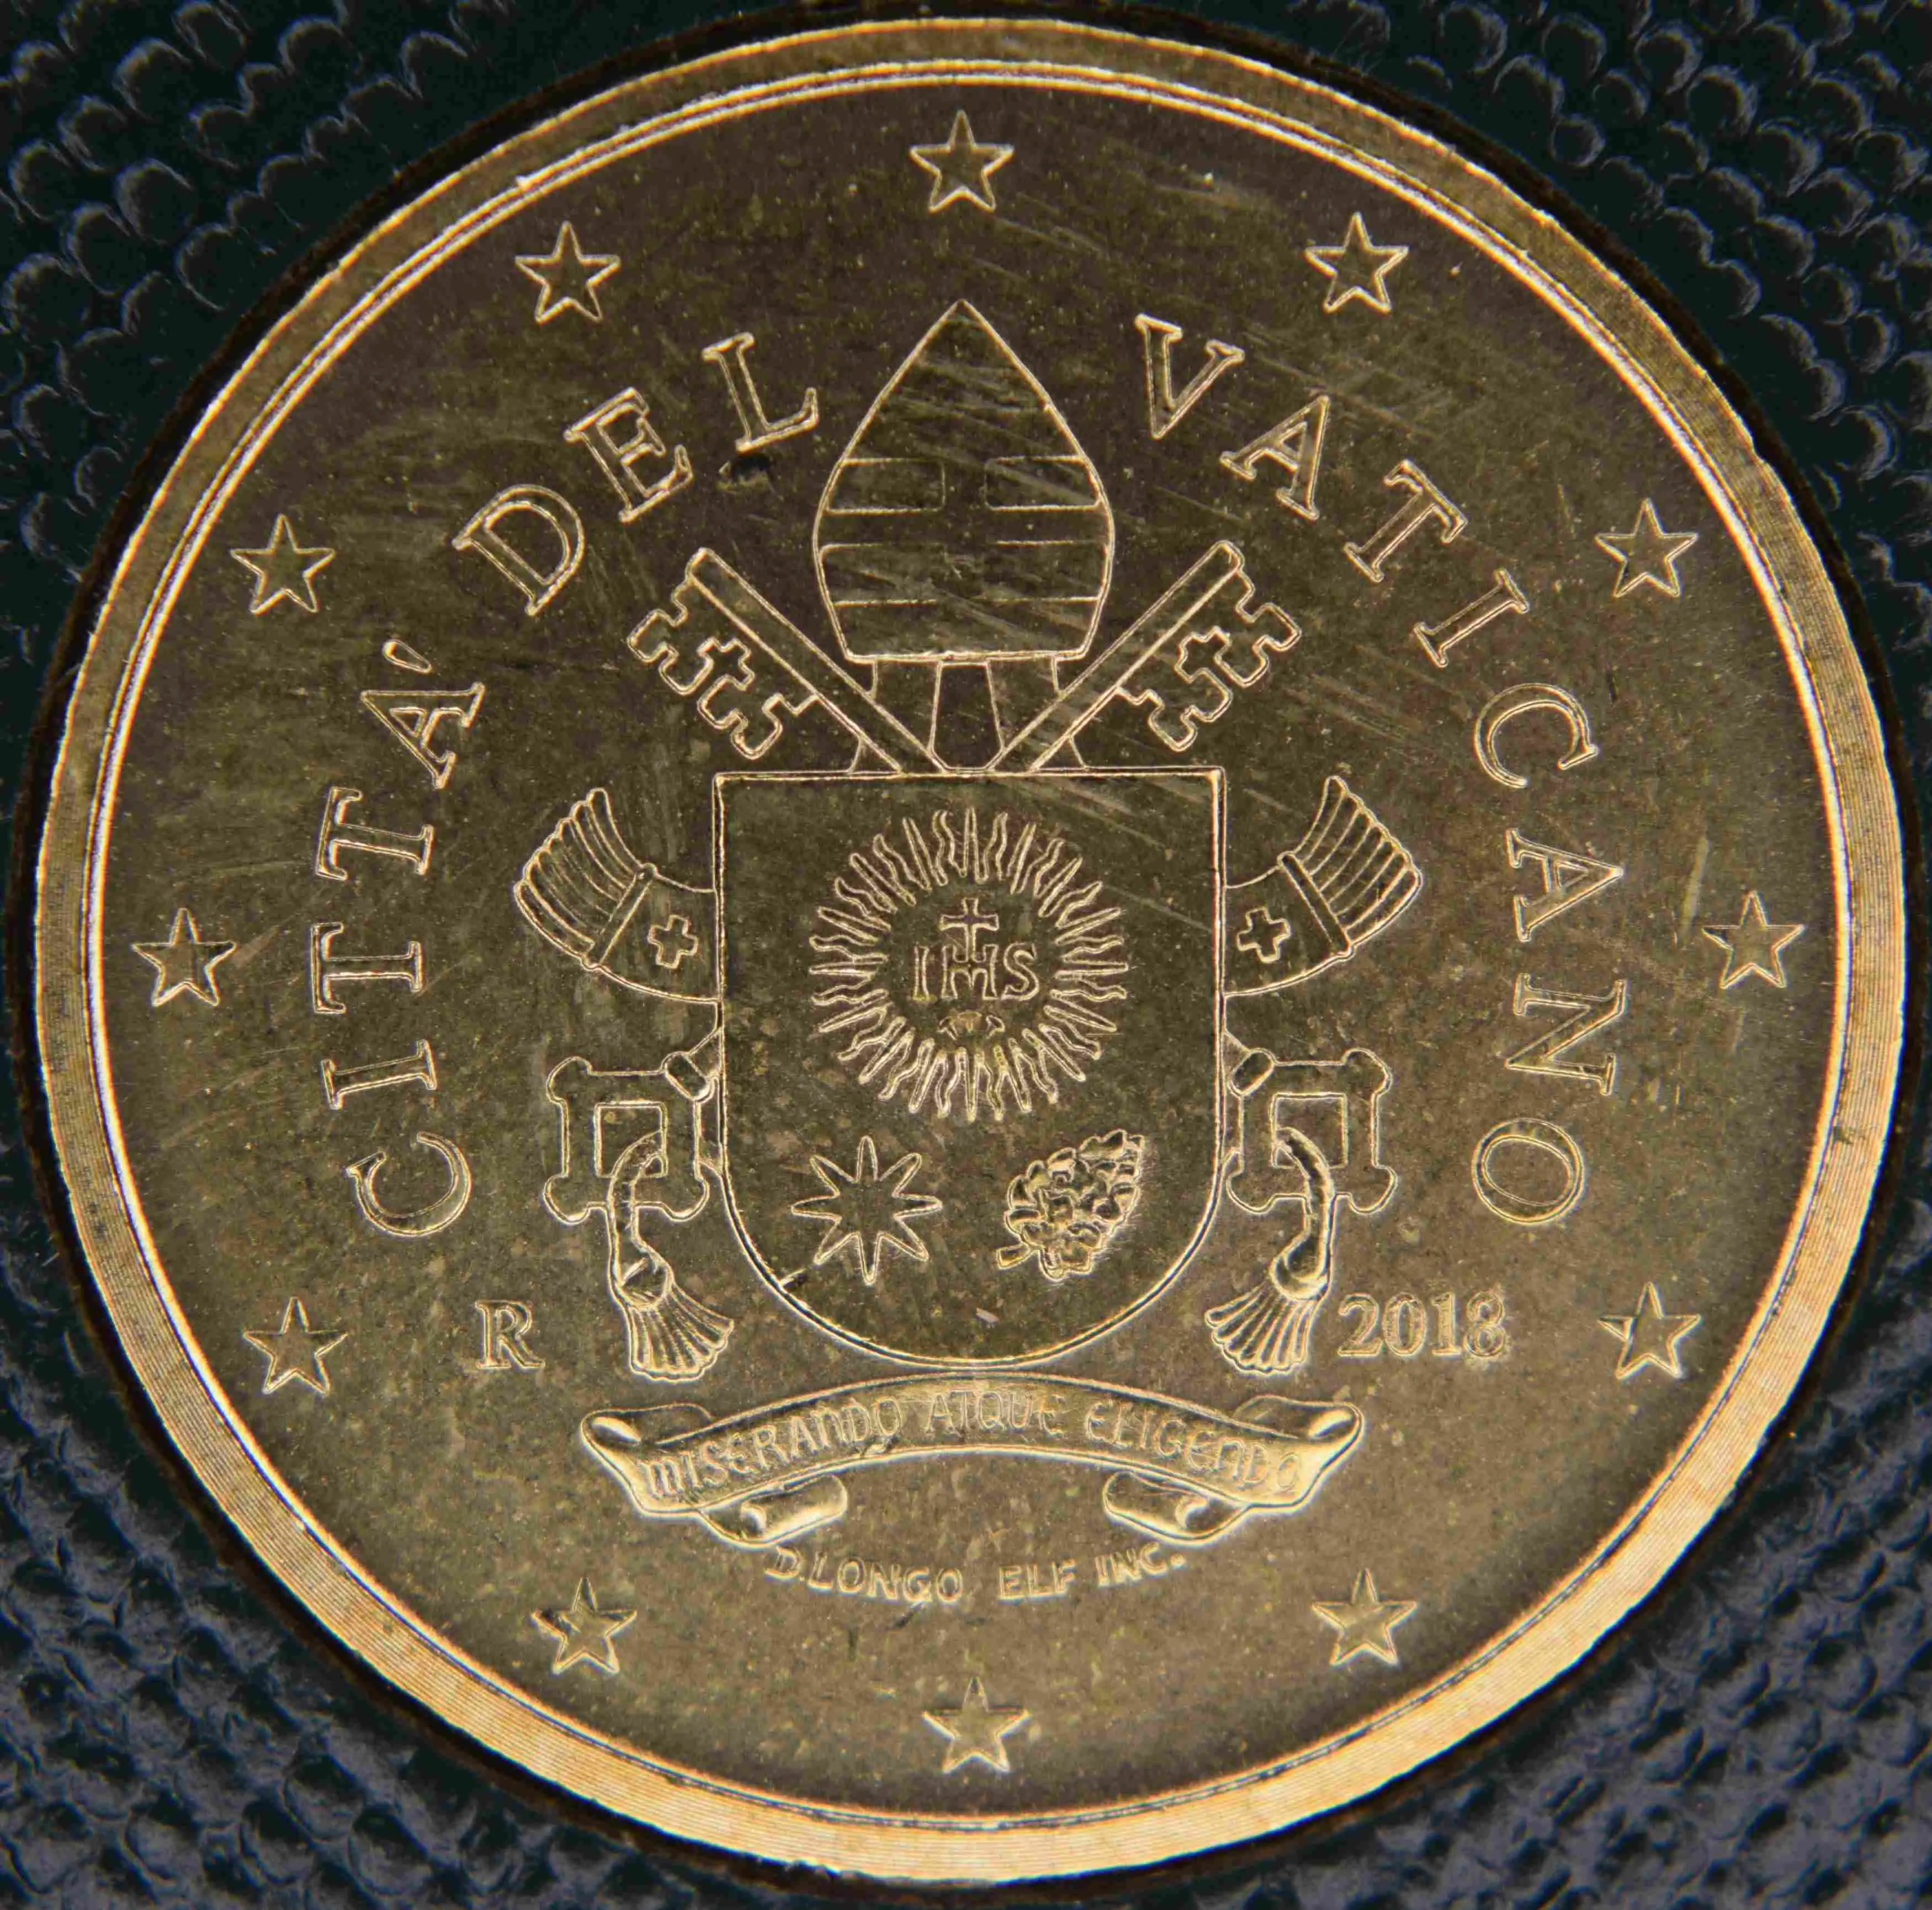 Vatican 50 Cent Coin 2018 - euro-coins.tv - The Online Eurocoins Catalogue